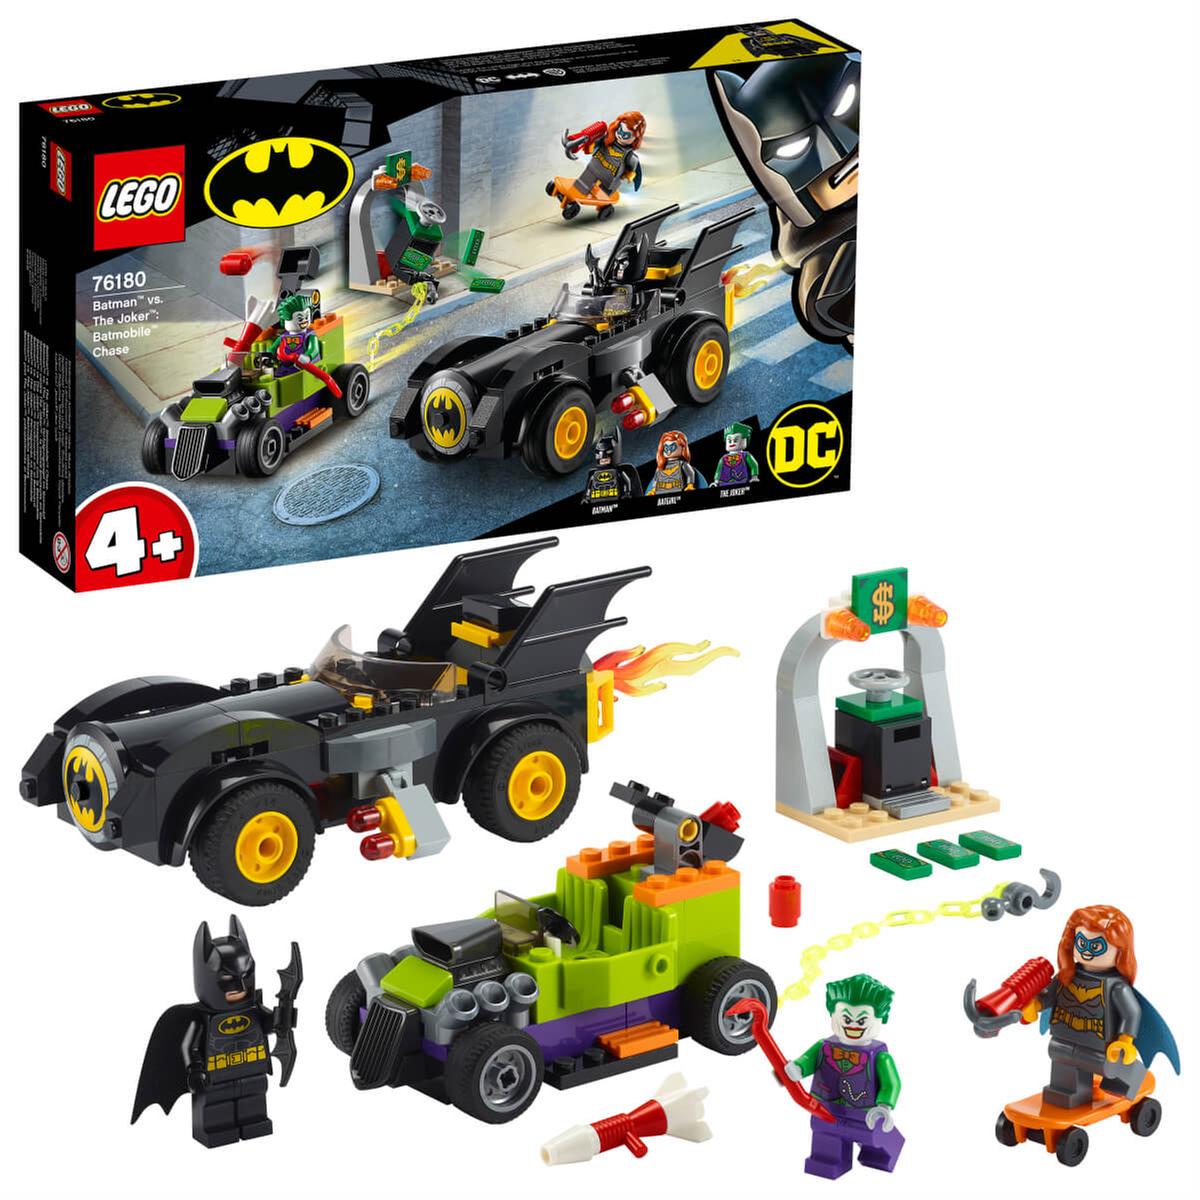 LEGO DC Comics - Batman vs. The Joker: perseguição de Batmóvel - 76180 |  LEGO MARVEL SUPER HEROES | Loja de brinquedos e videojogos Online Toysrus